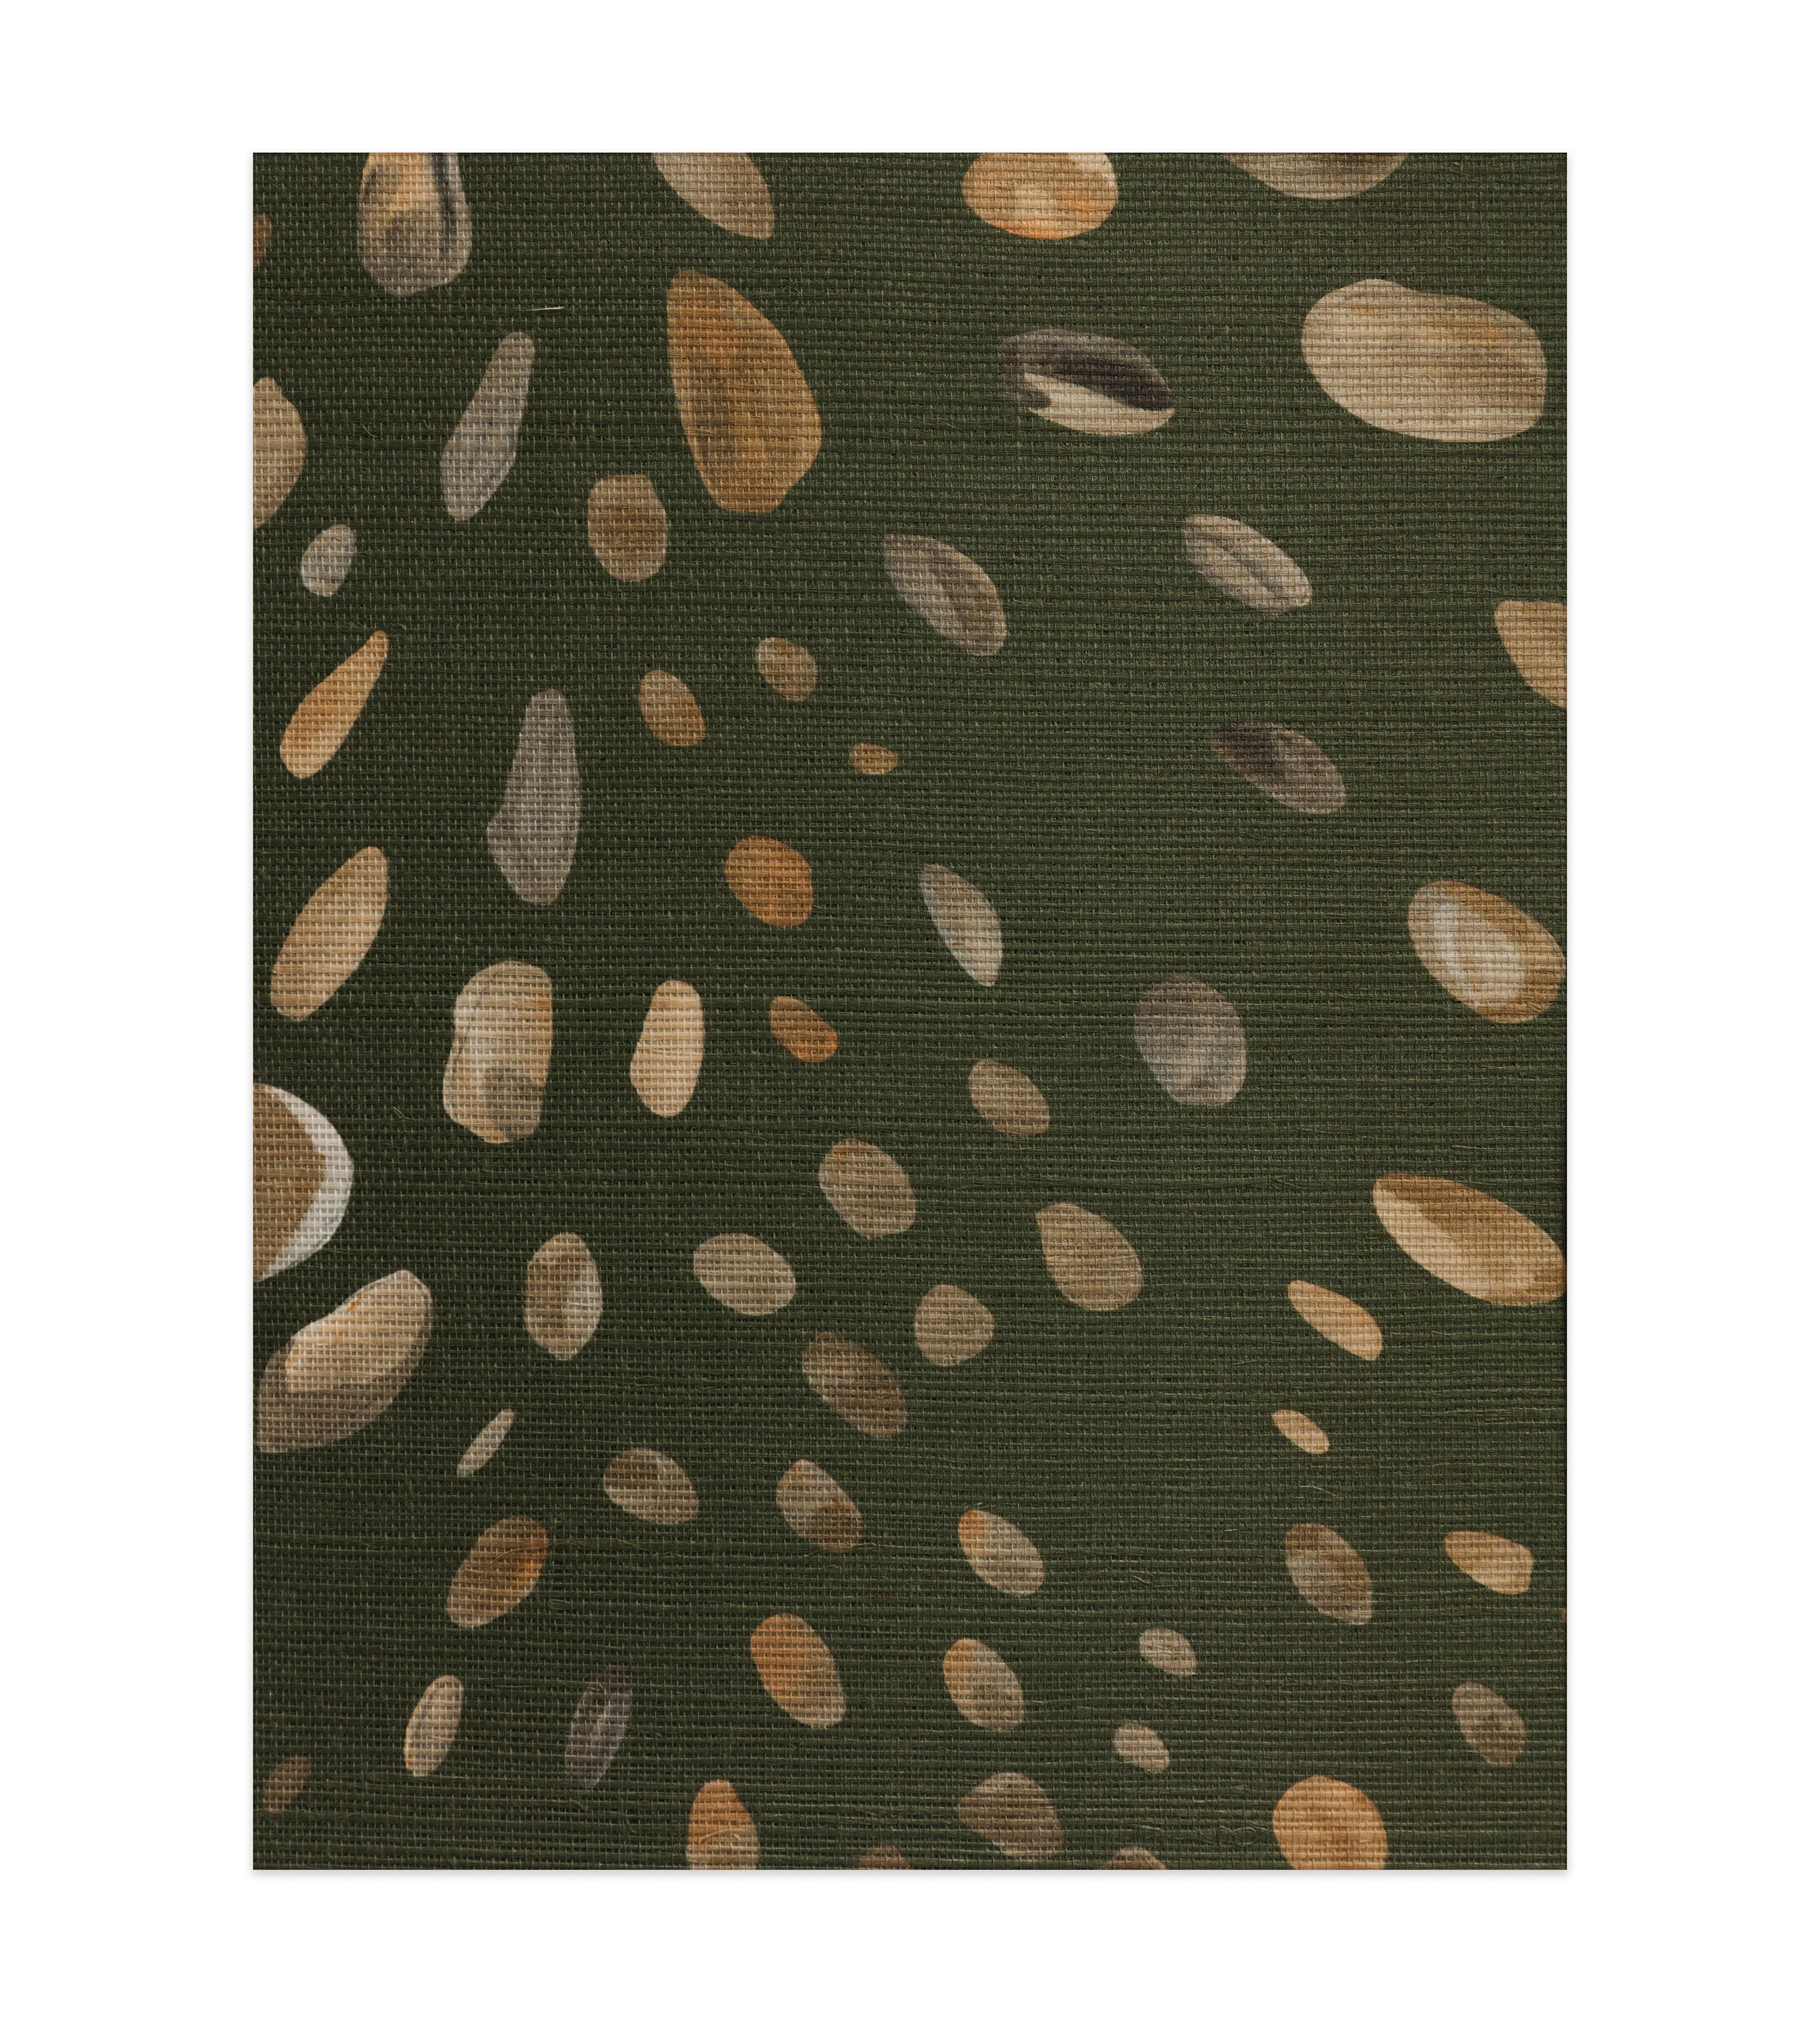 Cheetah Trompe L'oeil Green Metallic Grasscloth Wallpaper